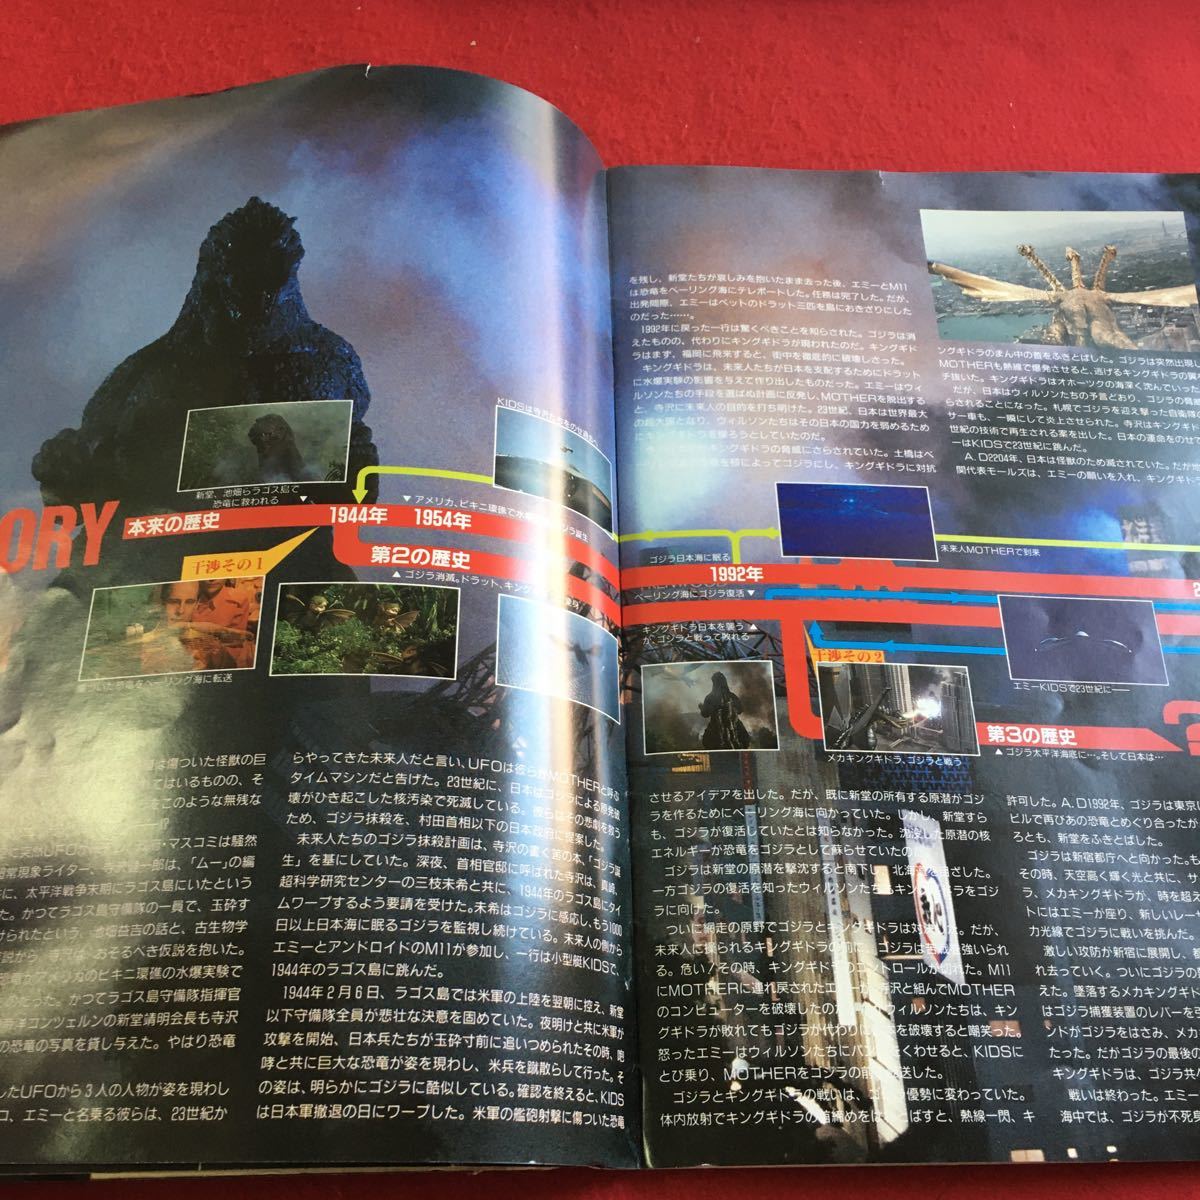 f-452 *2 Godzilla vs King Giddra movie pamphlet higashi .